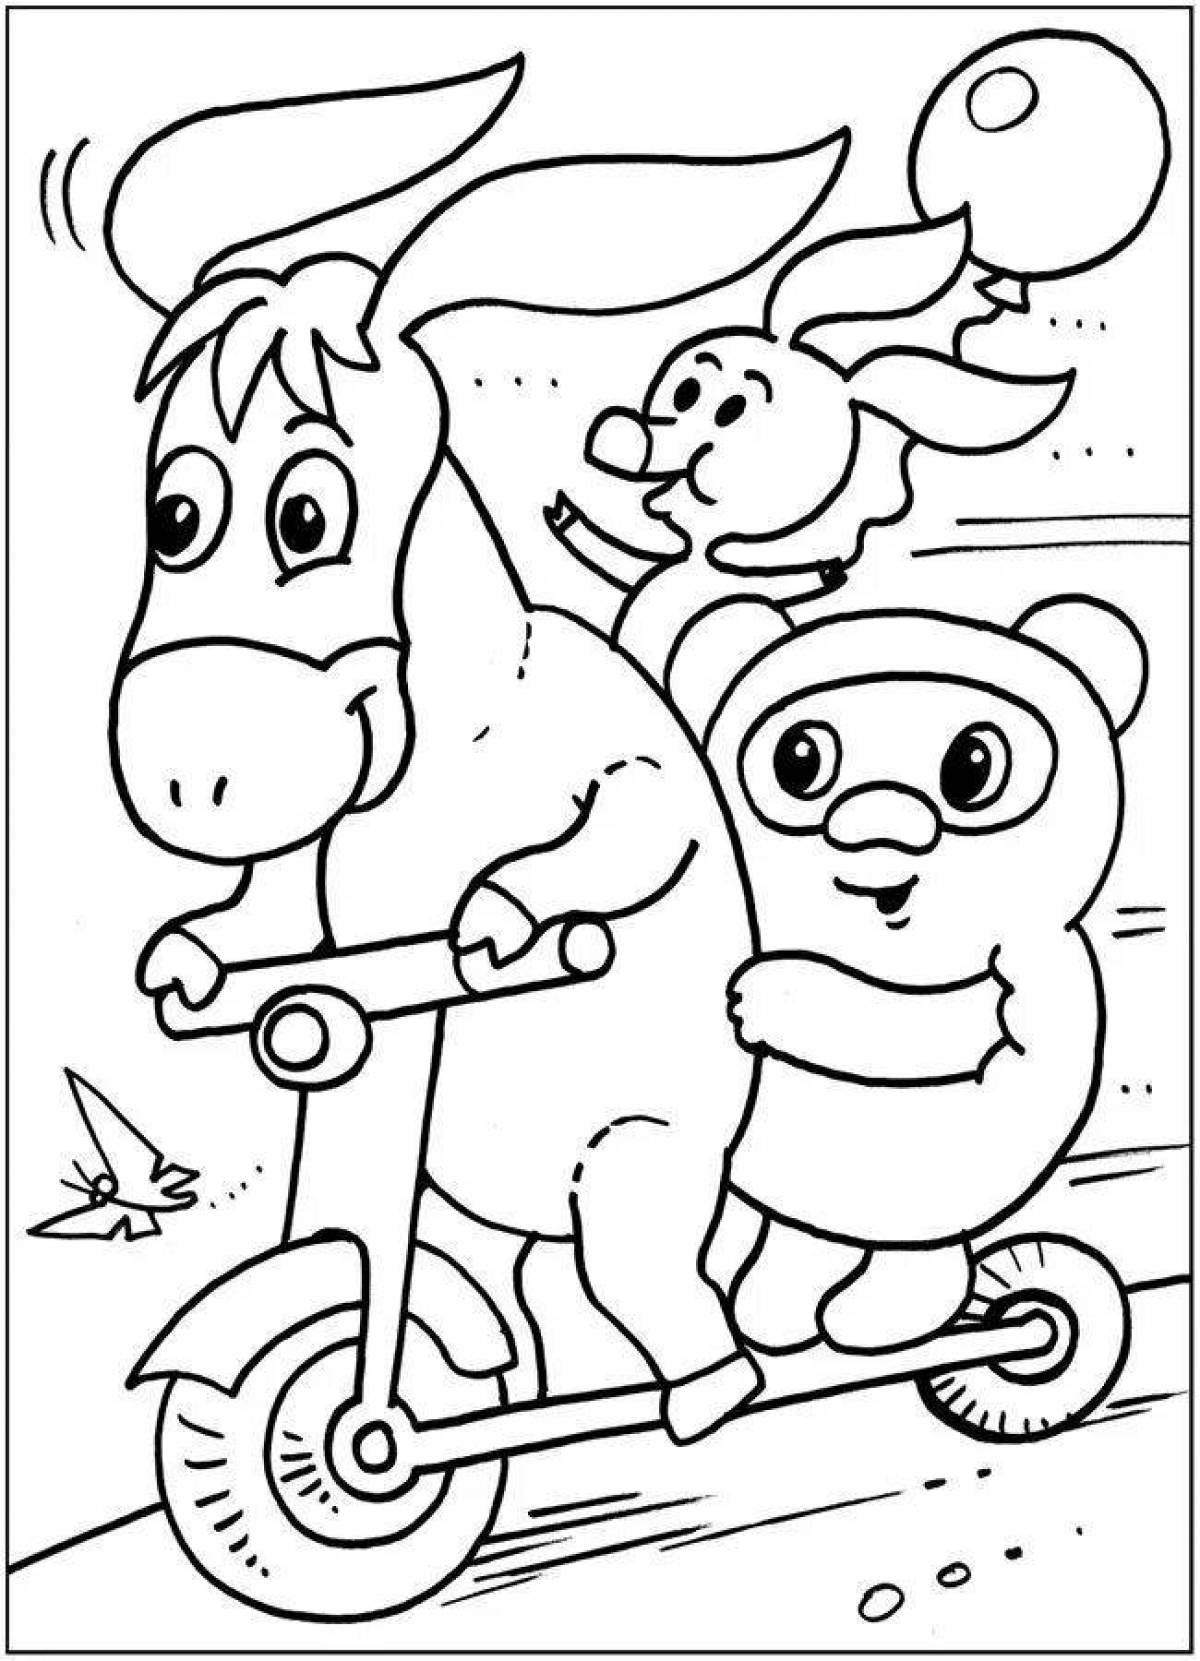 Привлекательная раскраска для детей из мультфильмов 5-6 лет